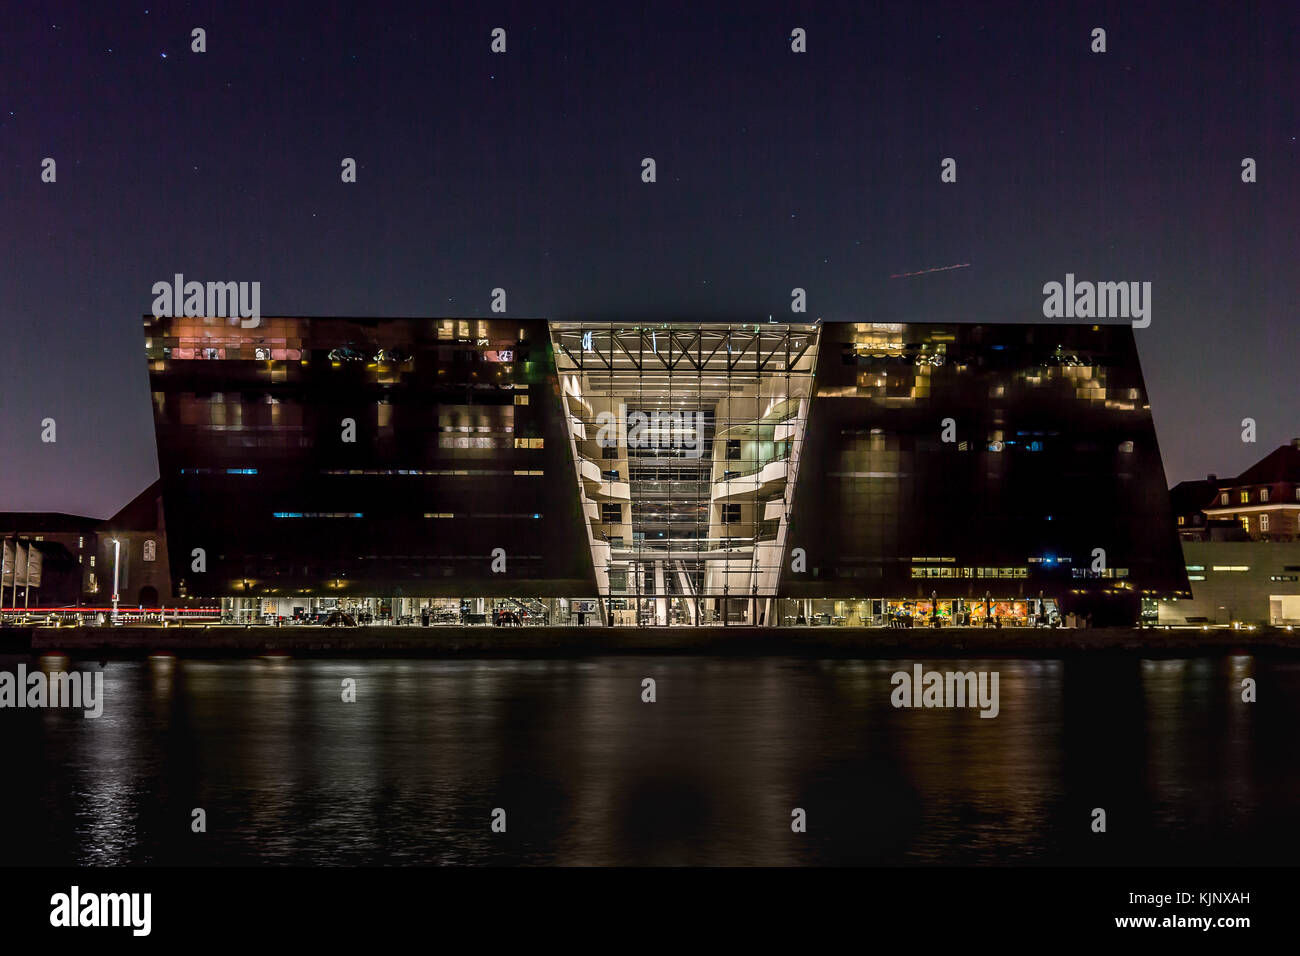 Der schwarze Diamant, der Nationalen Dänischen Bibliothek bei Nacht. Reflexionen im Wasser. Kopenhagen, Dänemark, 23. November 2017 Stockfoto